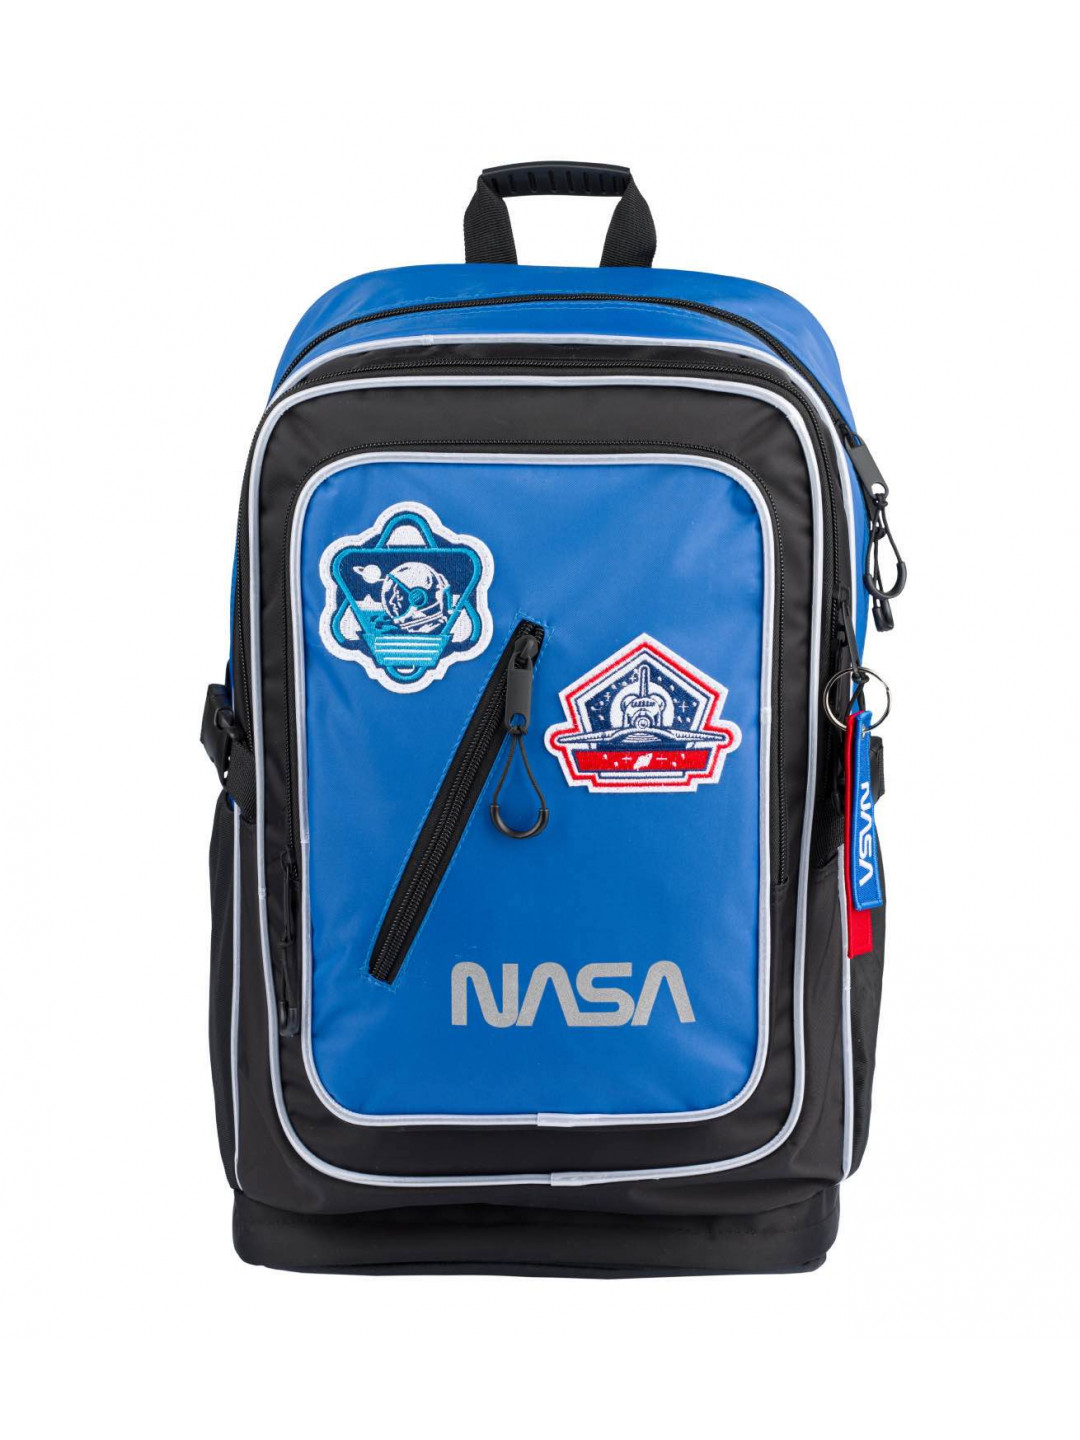 Školní batoh Cubic NASA